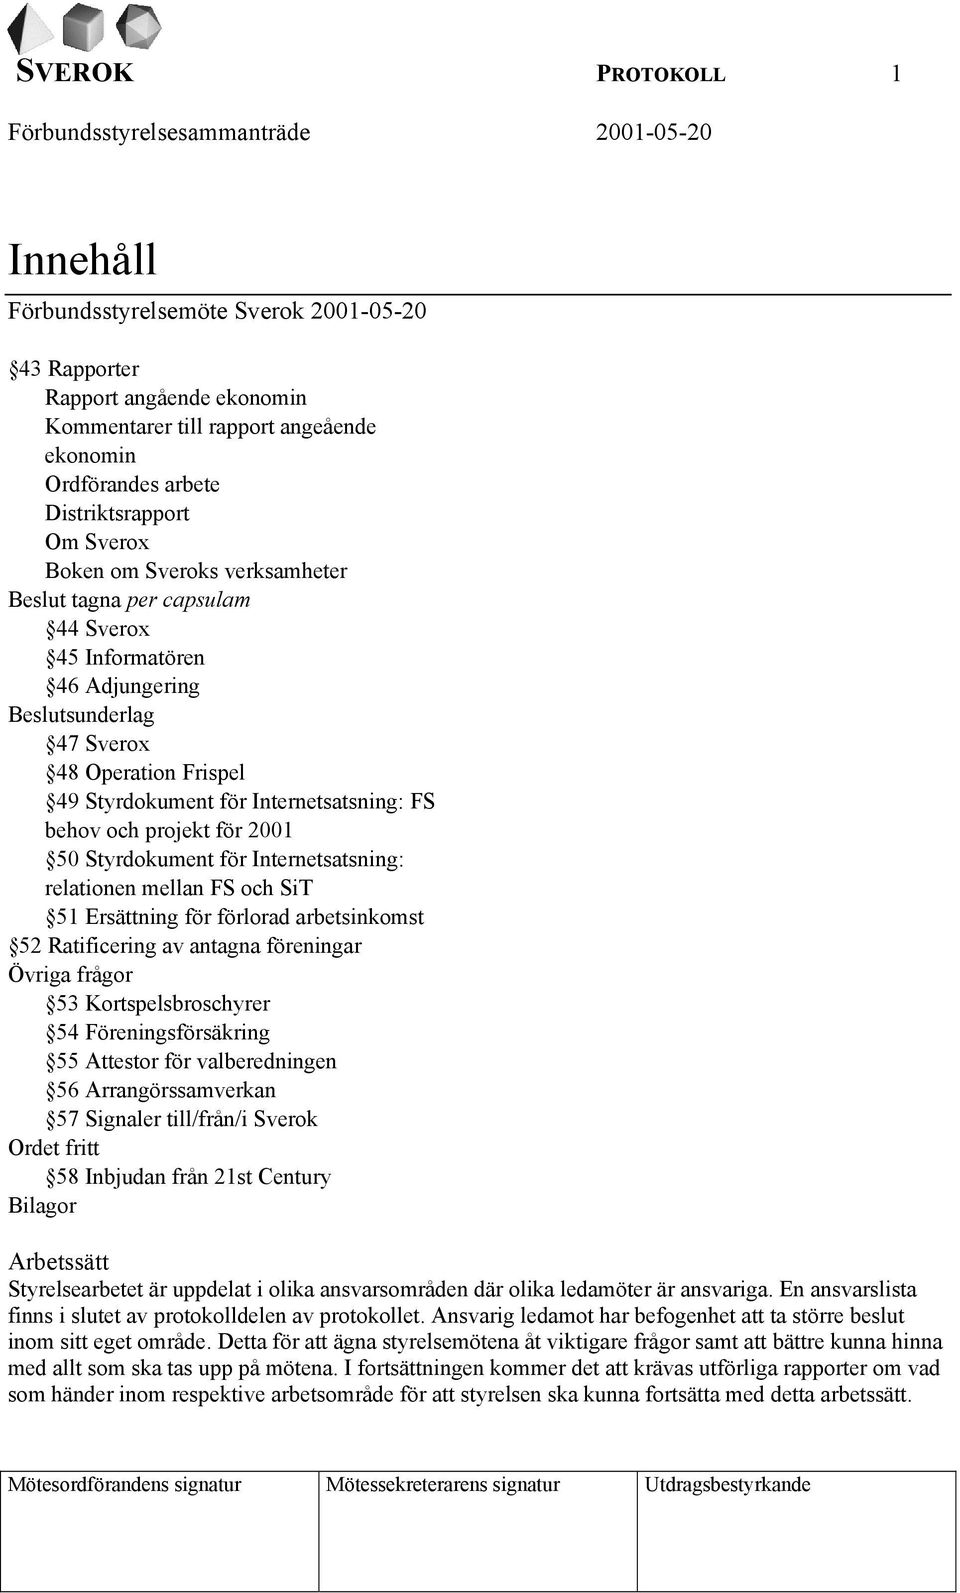 projekt för 2001 50 Styrdokument för Internetsatsning: relationen mellan FS och SiT 51 Ersättning för förlorad arbetsinkomst 52 Ratificering av antagna föreningar Övriga frågor 53 Kortspelsbroschyrer